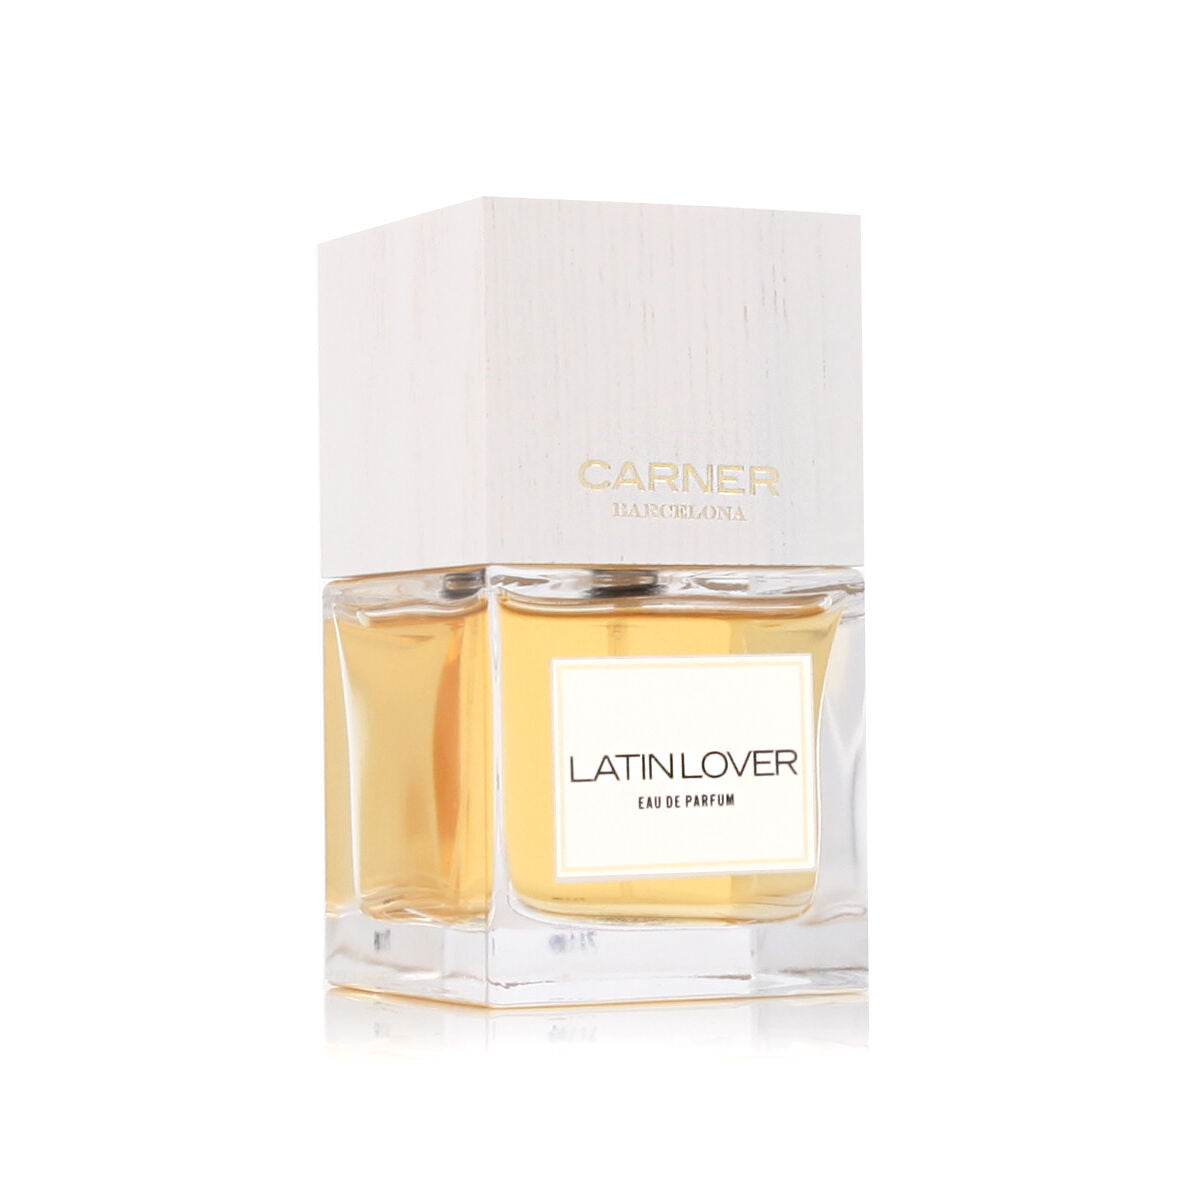 Uniseks Parfum Carner Barcelona EDP Latin Lover 100 ml